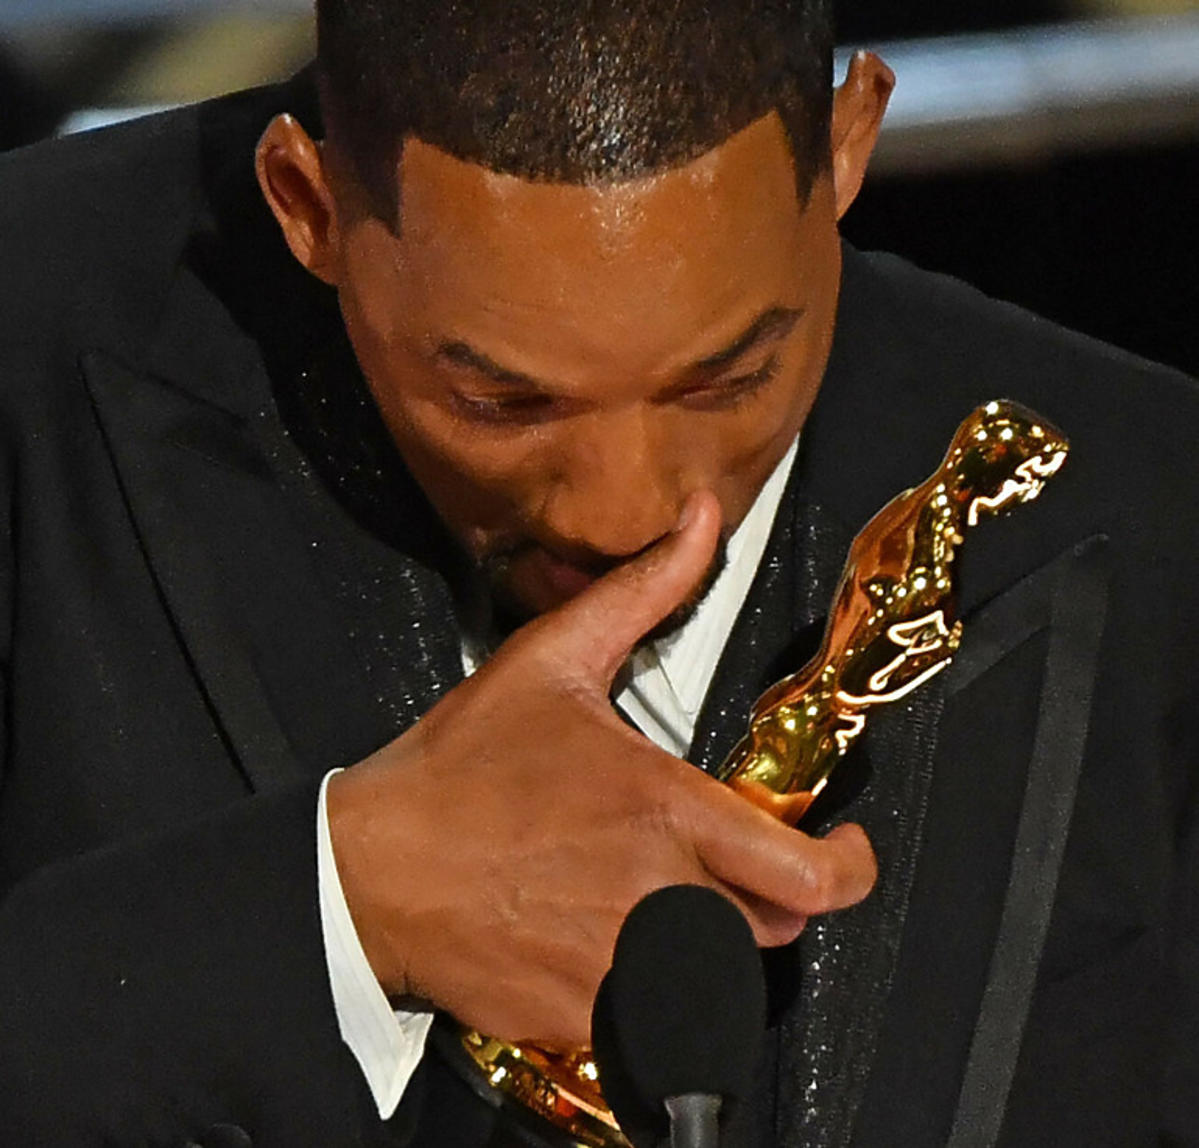 Oscary 2022: Will Smith płacze odbierając nagrodę